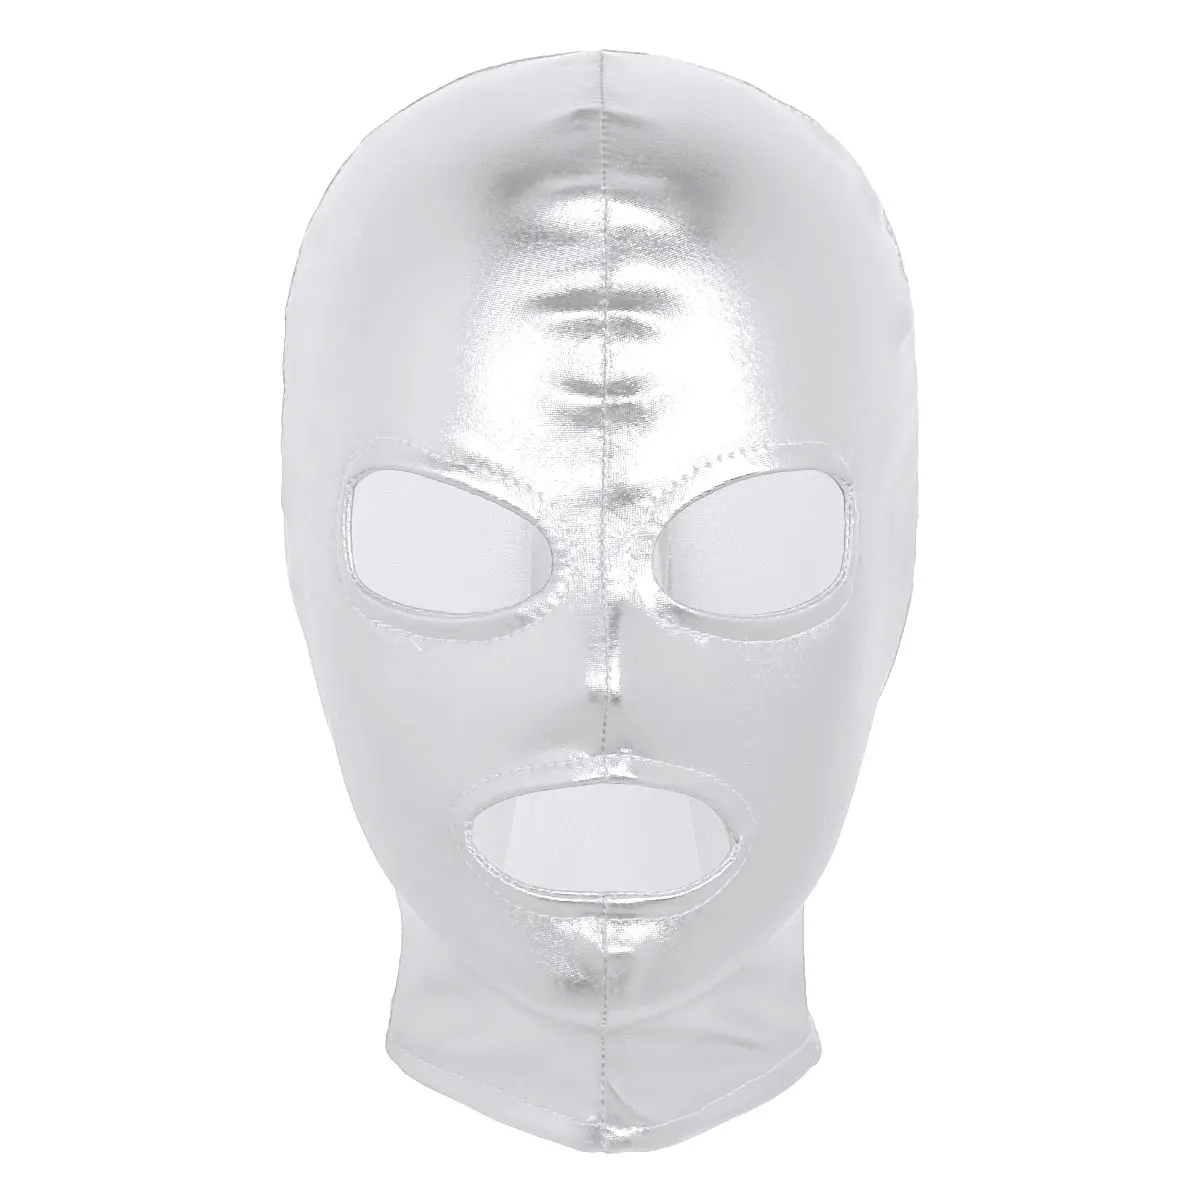 TiaoBug унисекс для женщин и мужчин блестящая латексная маска для ролевых игр полный капюшон головной убор ролевая игра Хэллоуин косплей костюм аксессуары